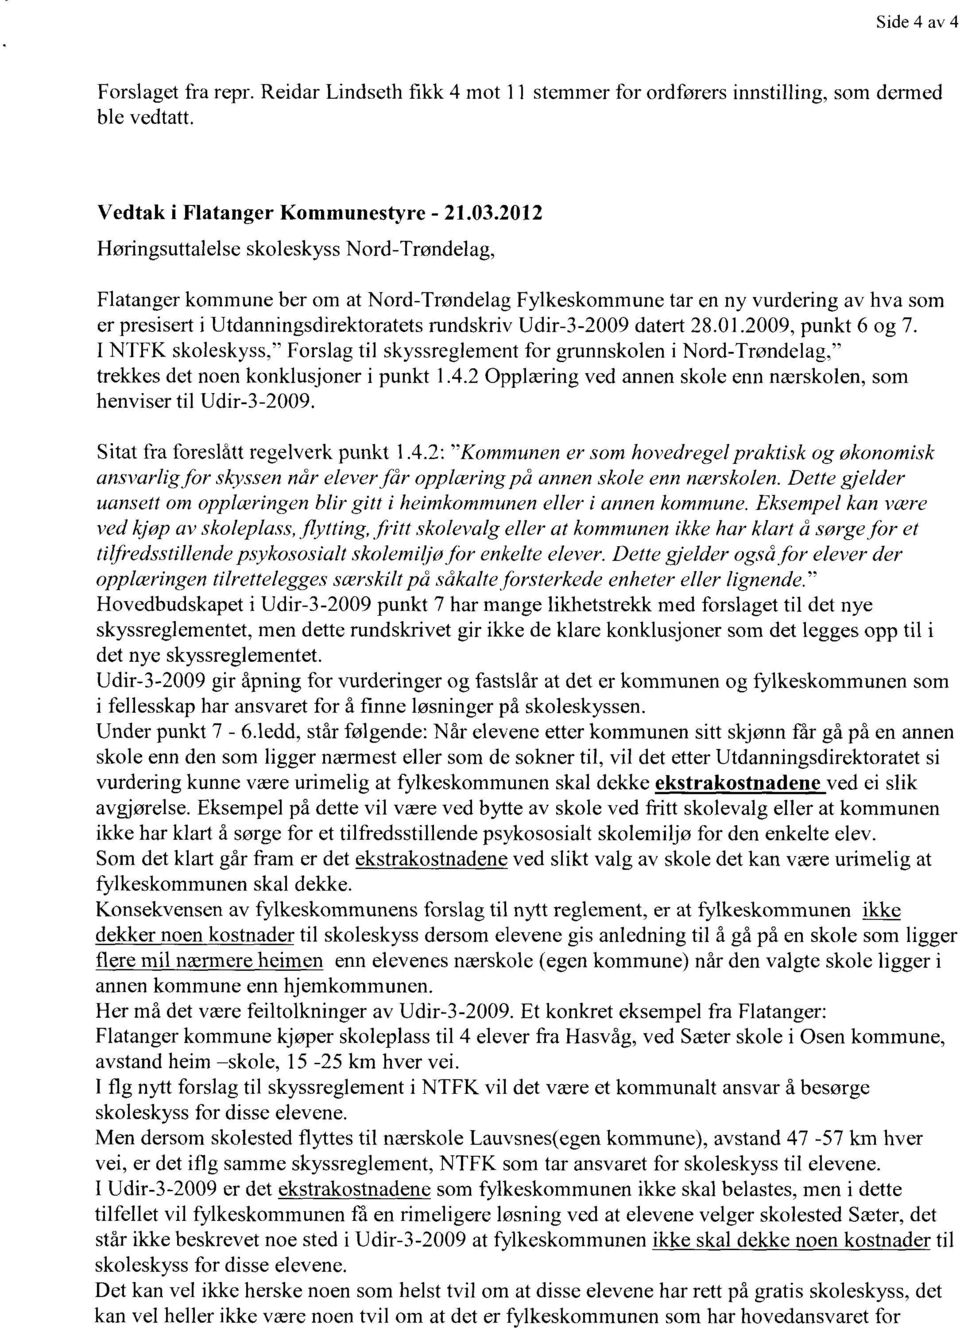 datert 28.01.2009, punkt 6 og 7. I NTFK skoleskyss," Forslag til skyssreglement for grunnskolen i Nord-Trøndelag." trekkes det noen konklusjoner i punkt 1.4.